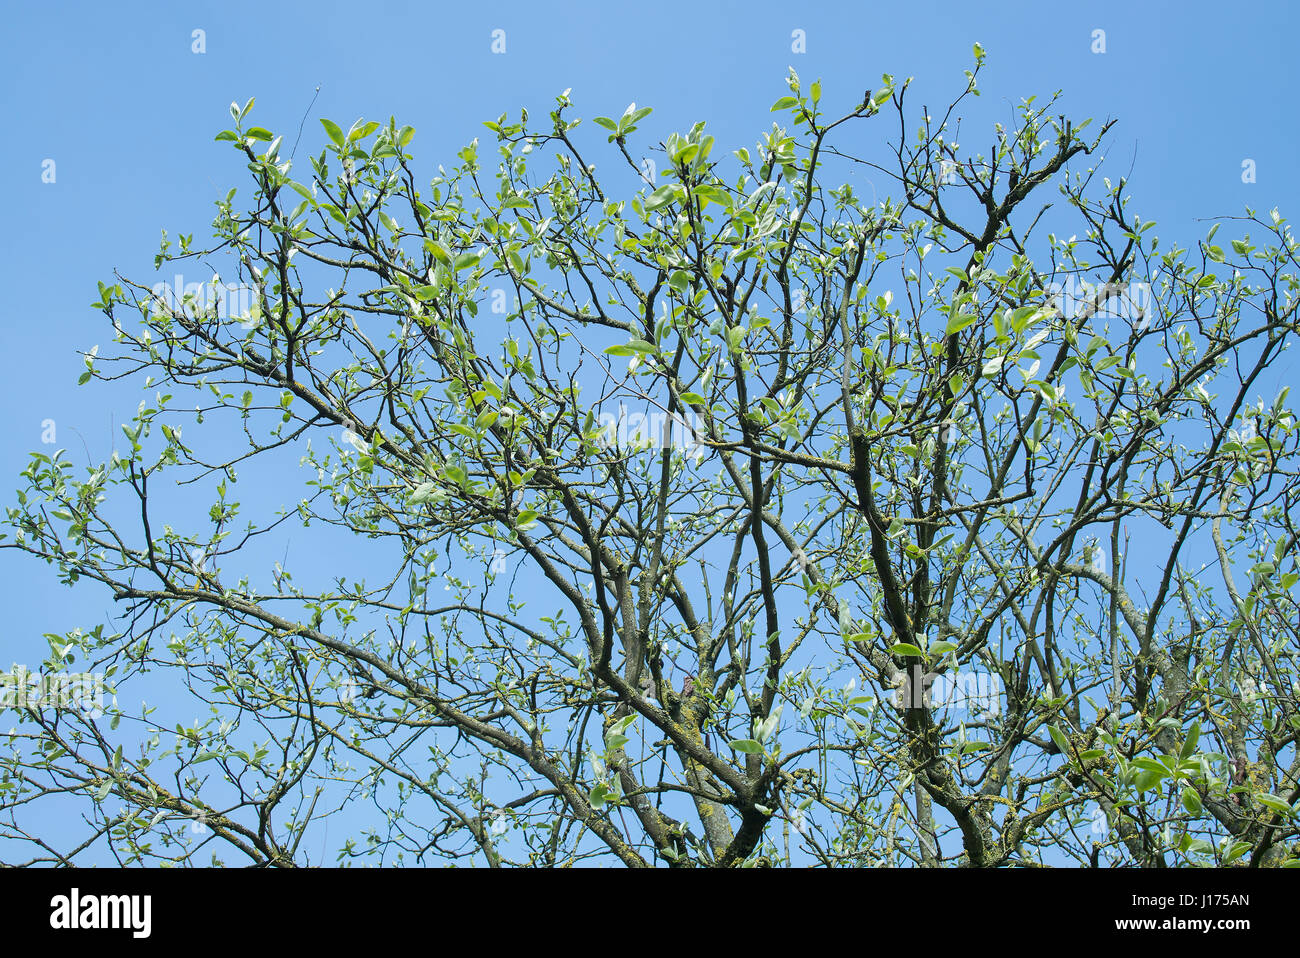 Zuerst verlässt nach der Beschneidung Behandlung zur Bekämpfung der Krankheit im Vergleich zum Vorjahr auf Cydonia Oblonga Obstbaum wächst Stockfoto